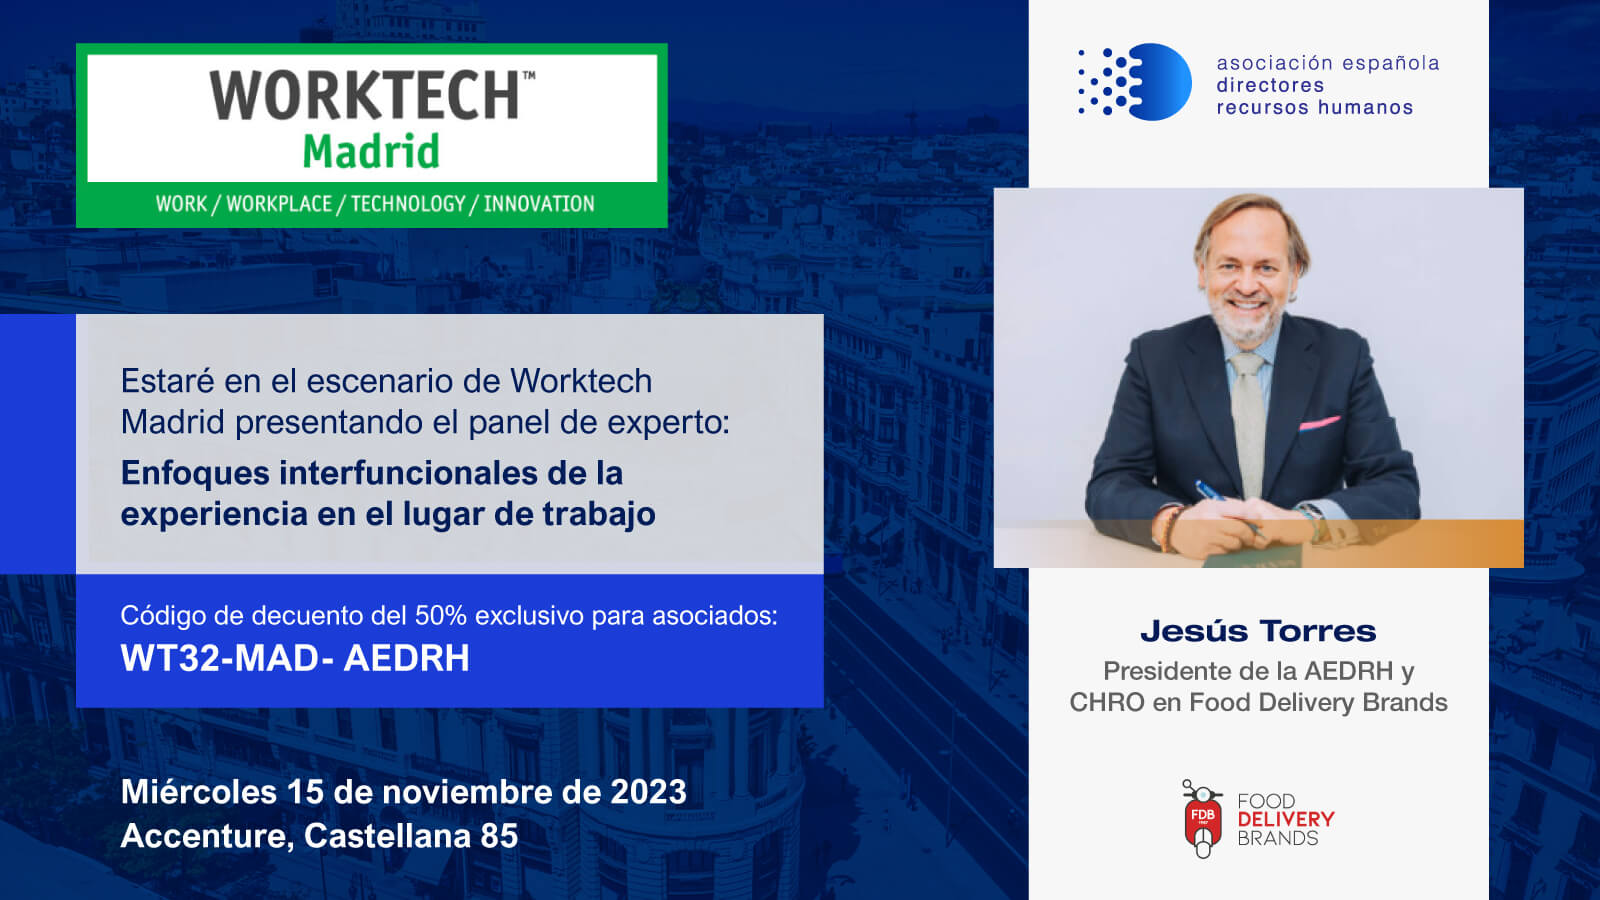 Jesús Torres será Speaker en el Worktech Madrid -15 de Noviembre